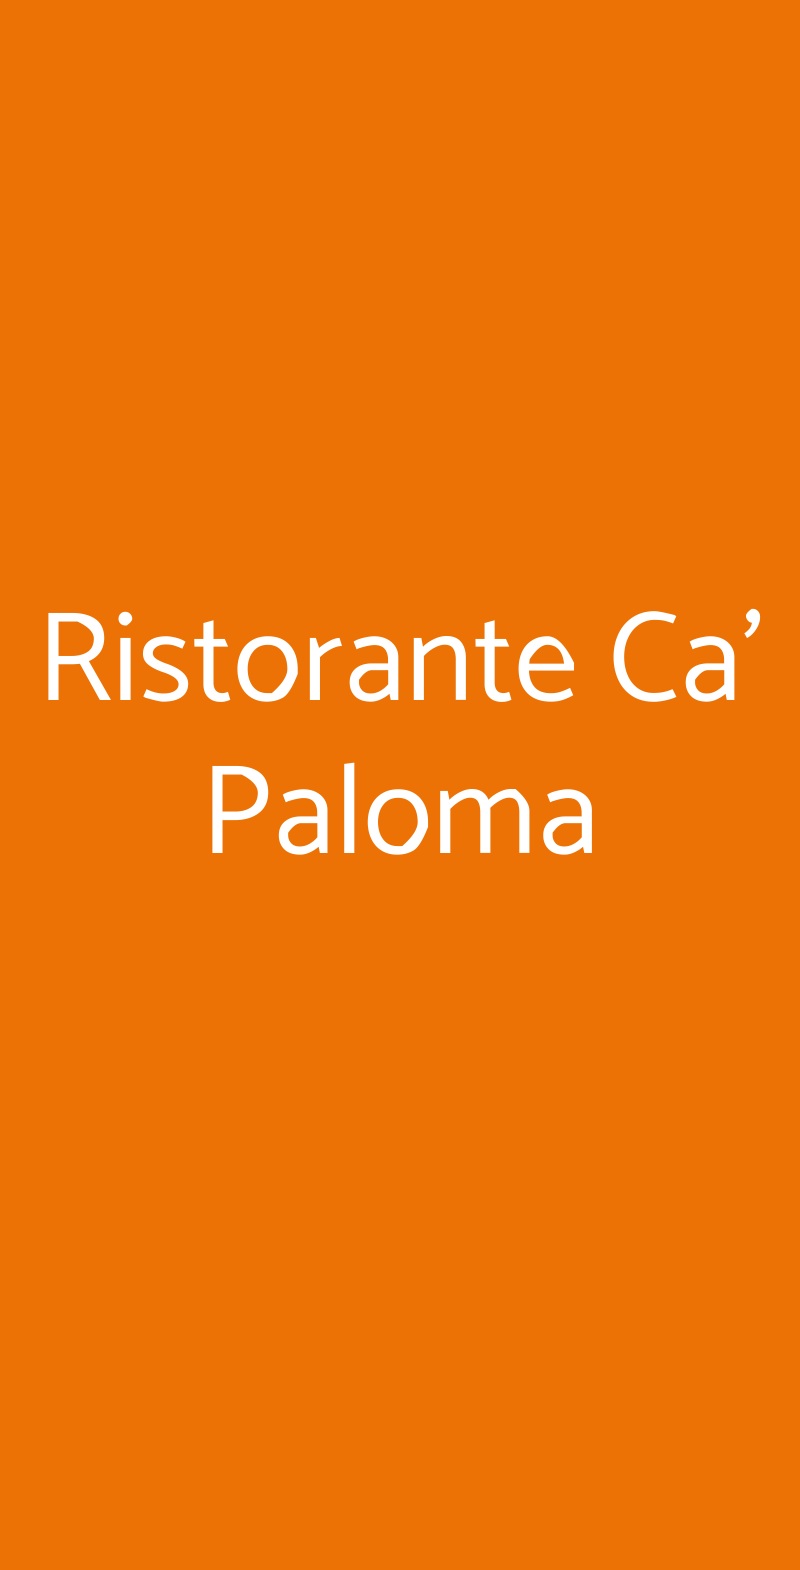 Ristorante Ca' Paloma Jesolo menù 1 pagina